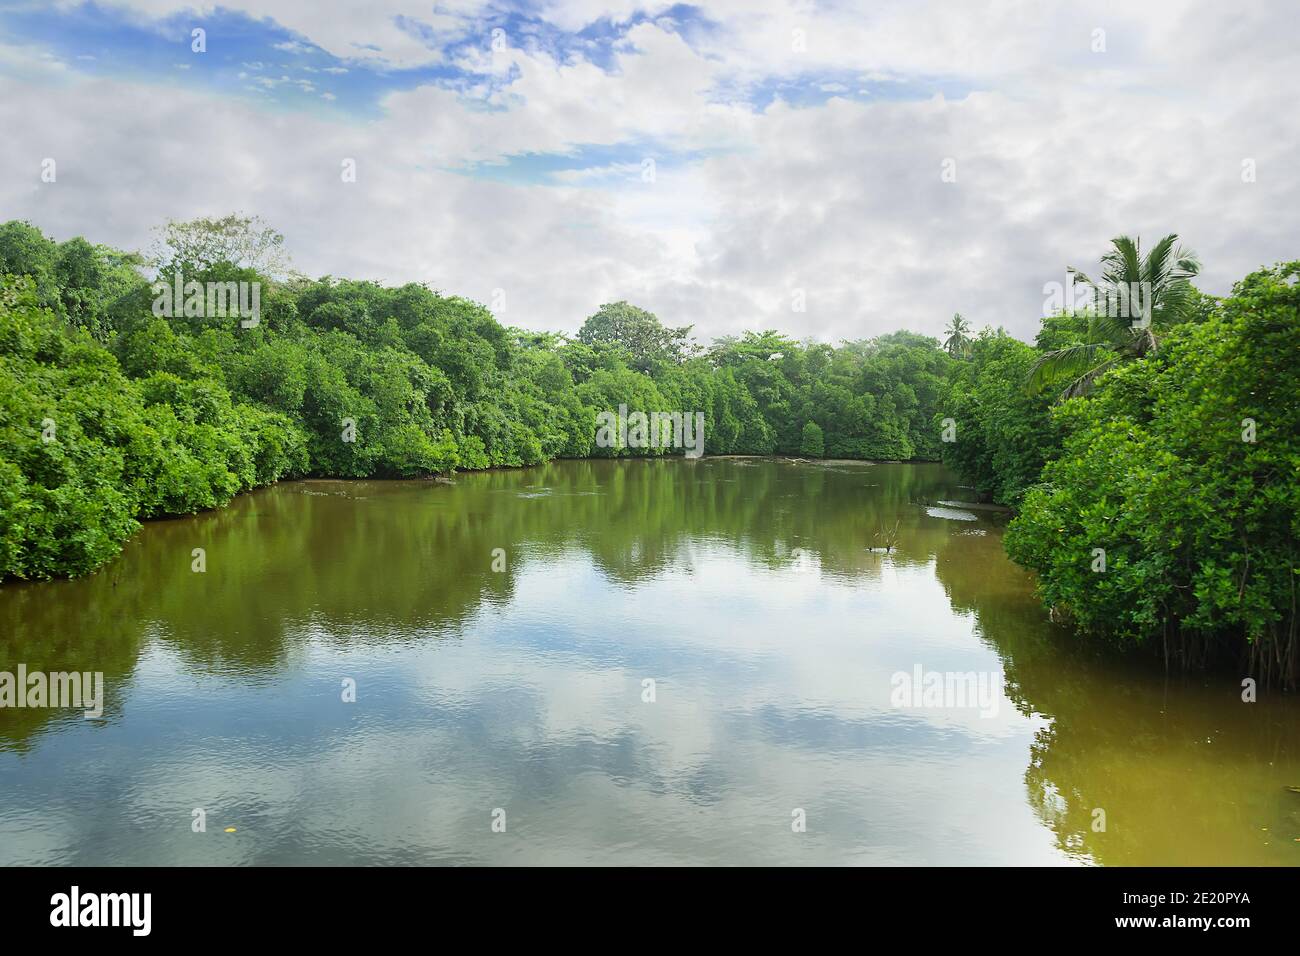 Forêts tropicales sur les plaines du Sri Lanka. - la limite écologique, l'embouchure de la rivière et le début des forêts de mangroves comme écosystème le plus riche Banque D'Images